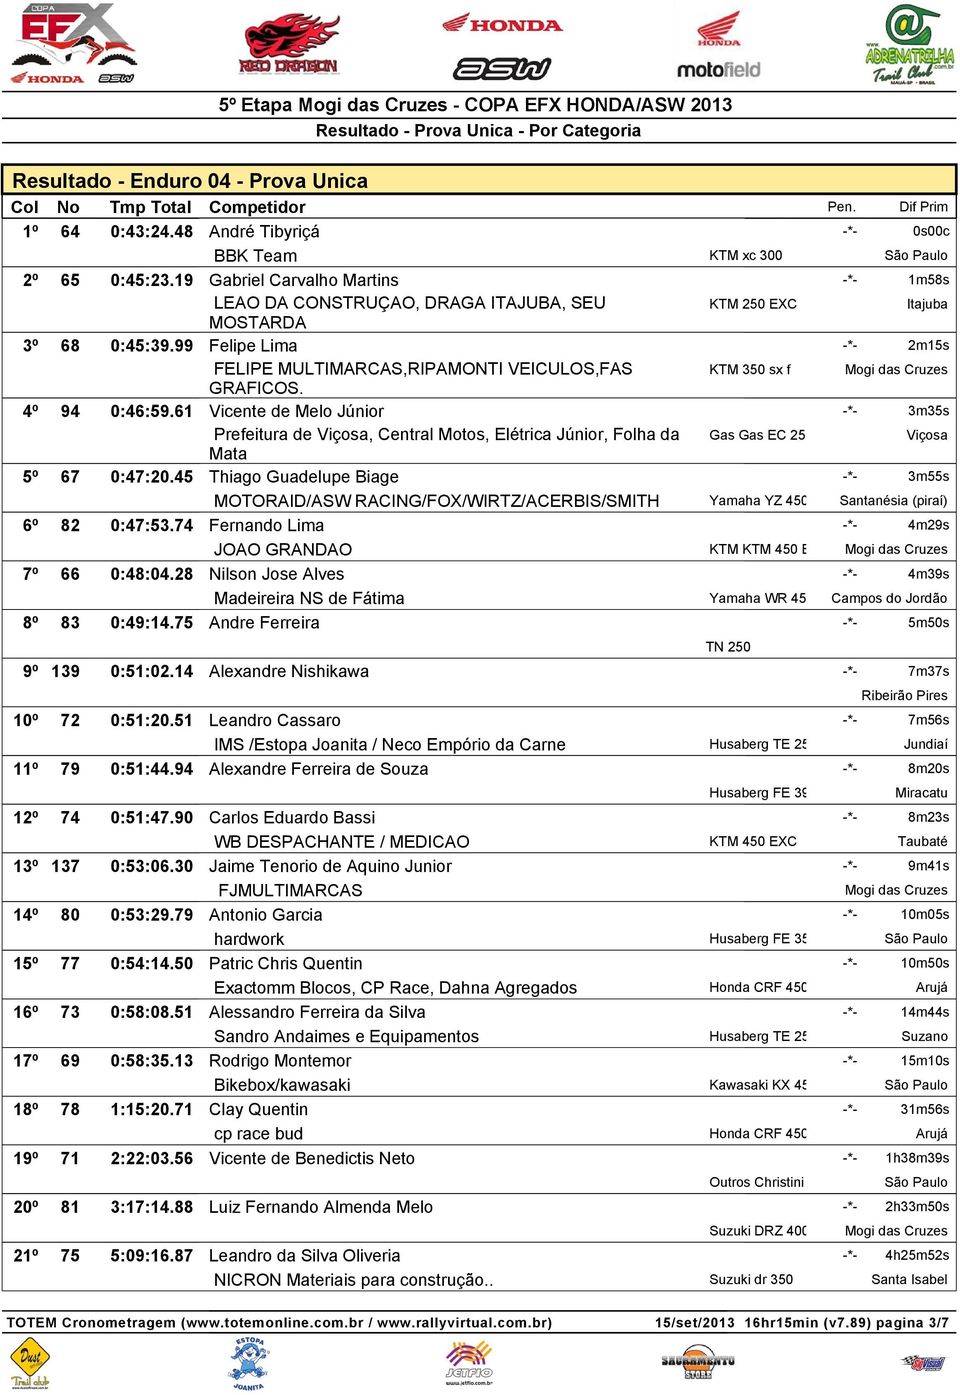 KTM 350 sx f 4º 94 0:46:59.61 Vicente de Melo Júnior -*- 3m35s Prefeitura de Viçosa, Central Motos, Elétrica Júnior, Folha da Mata Gas Gas EC 250 Viçosa 5º 67 0:47:20.